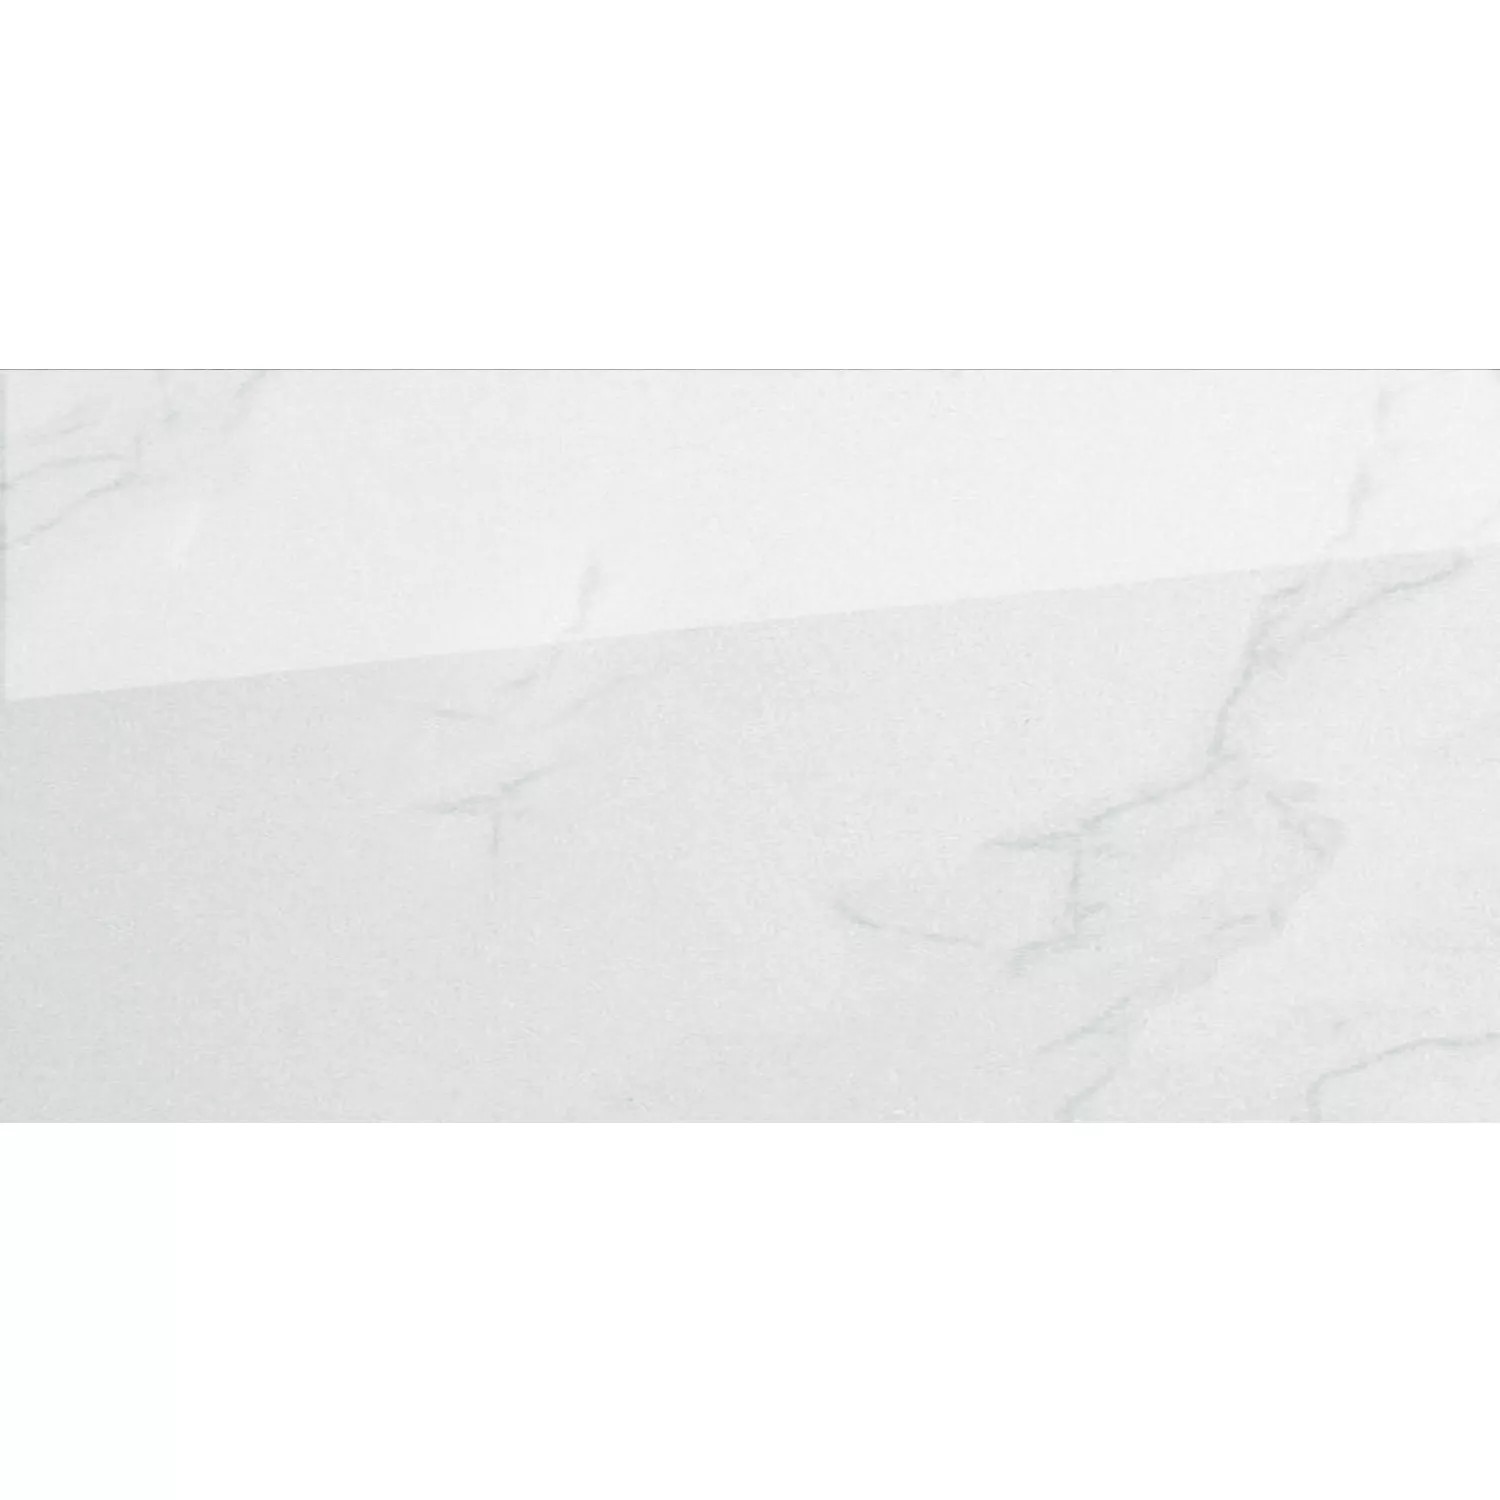 Mодел Плочки За Под Bид Hа Eстествен Kамък Ephesos Бяло 30x60cm